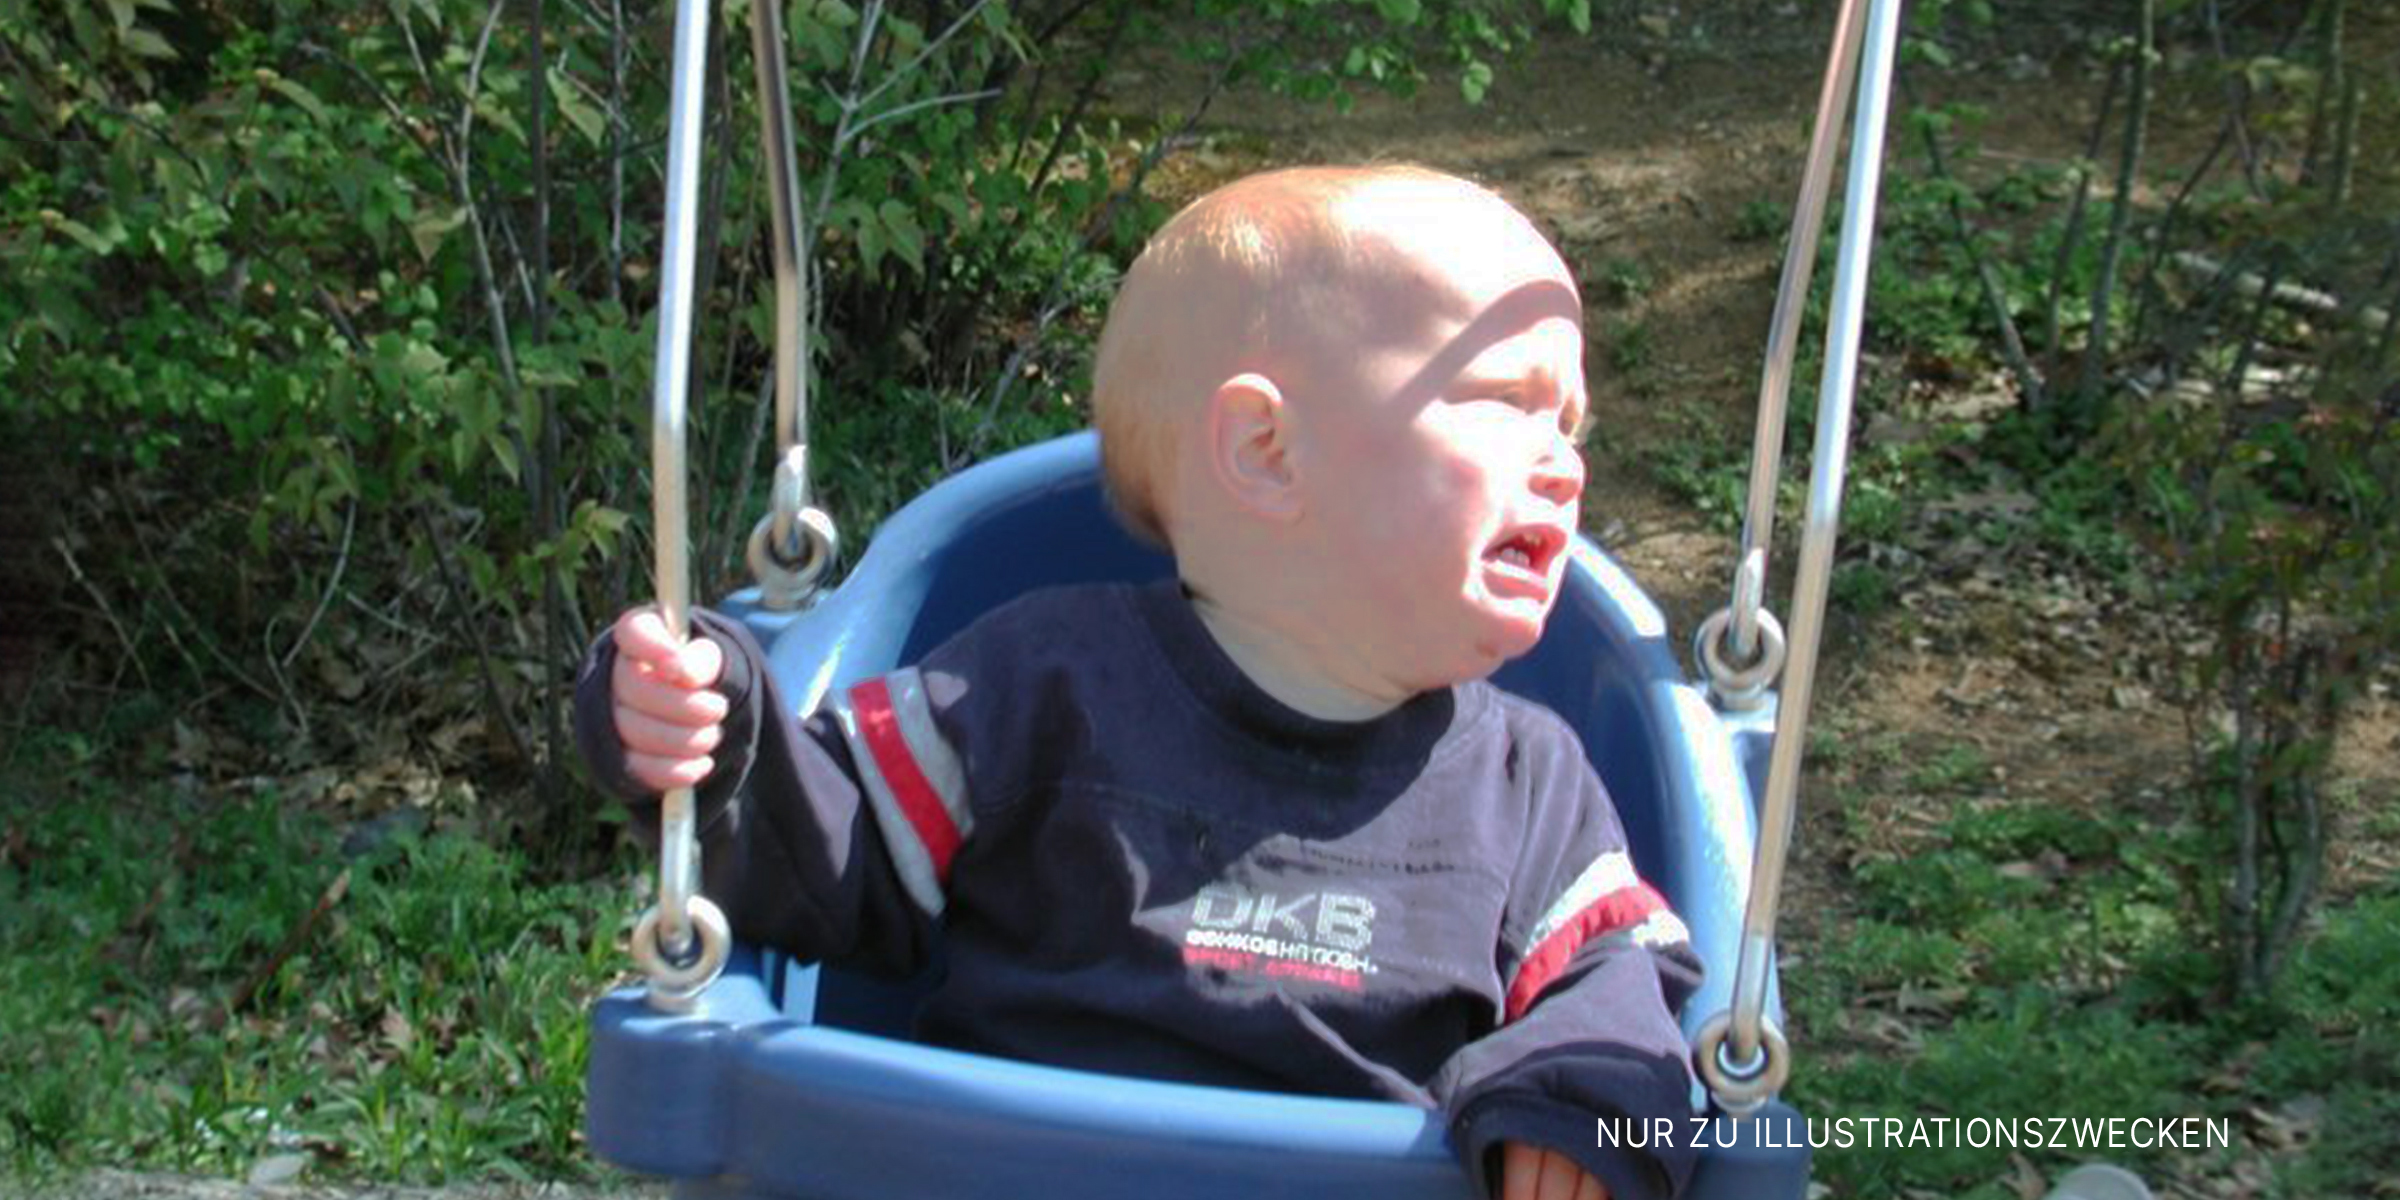 Ein weinendes Baby auf der Schaukel | Quelle: Flickr/subewl (CC BY-SA 2.0)